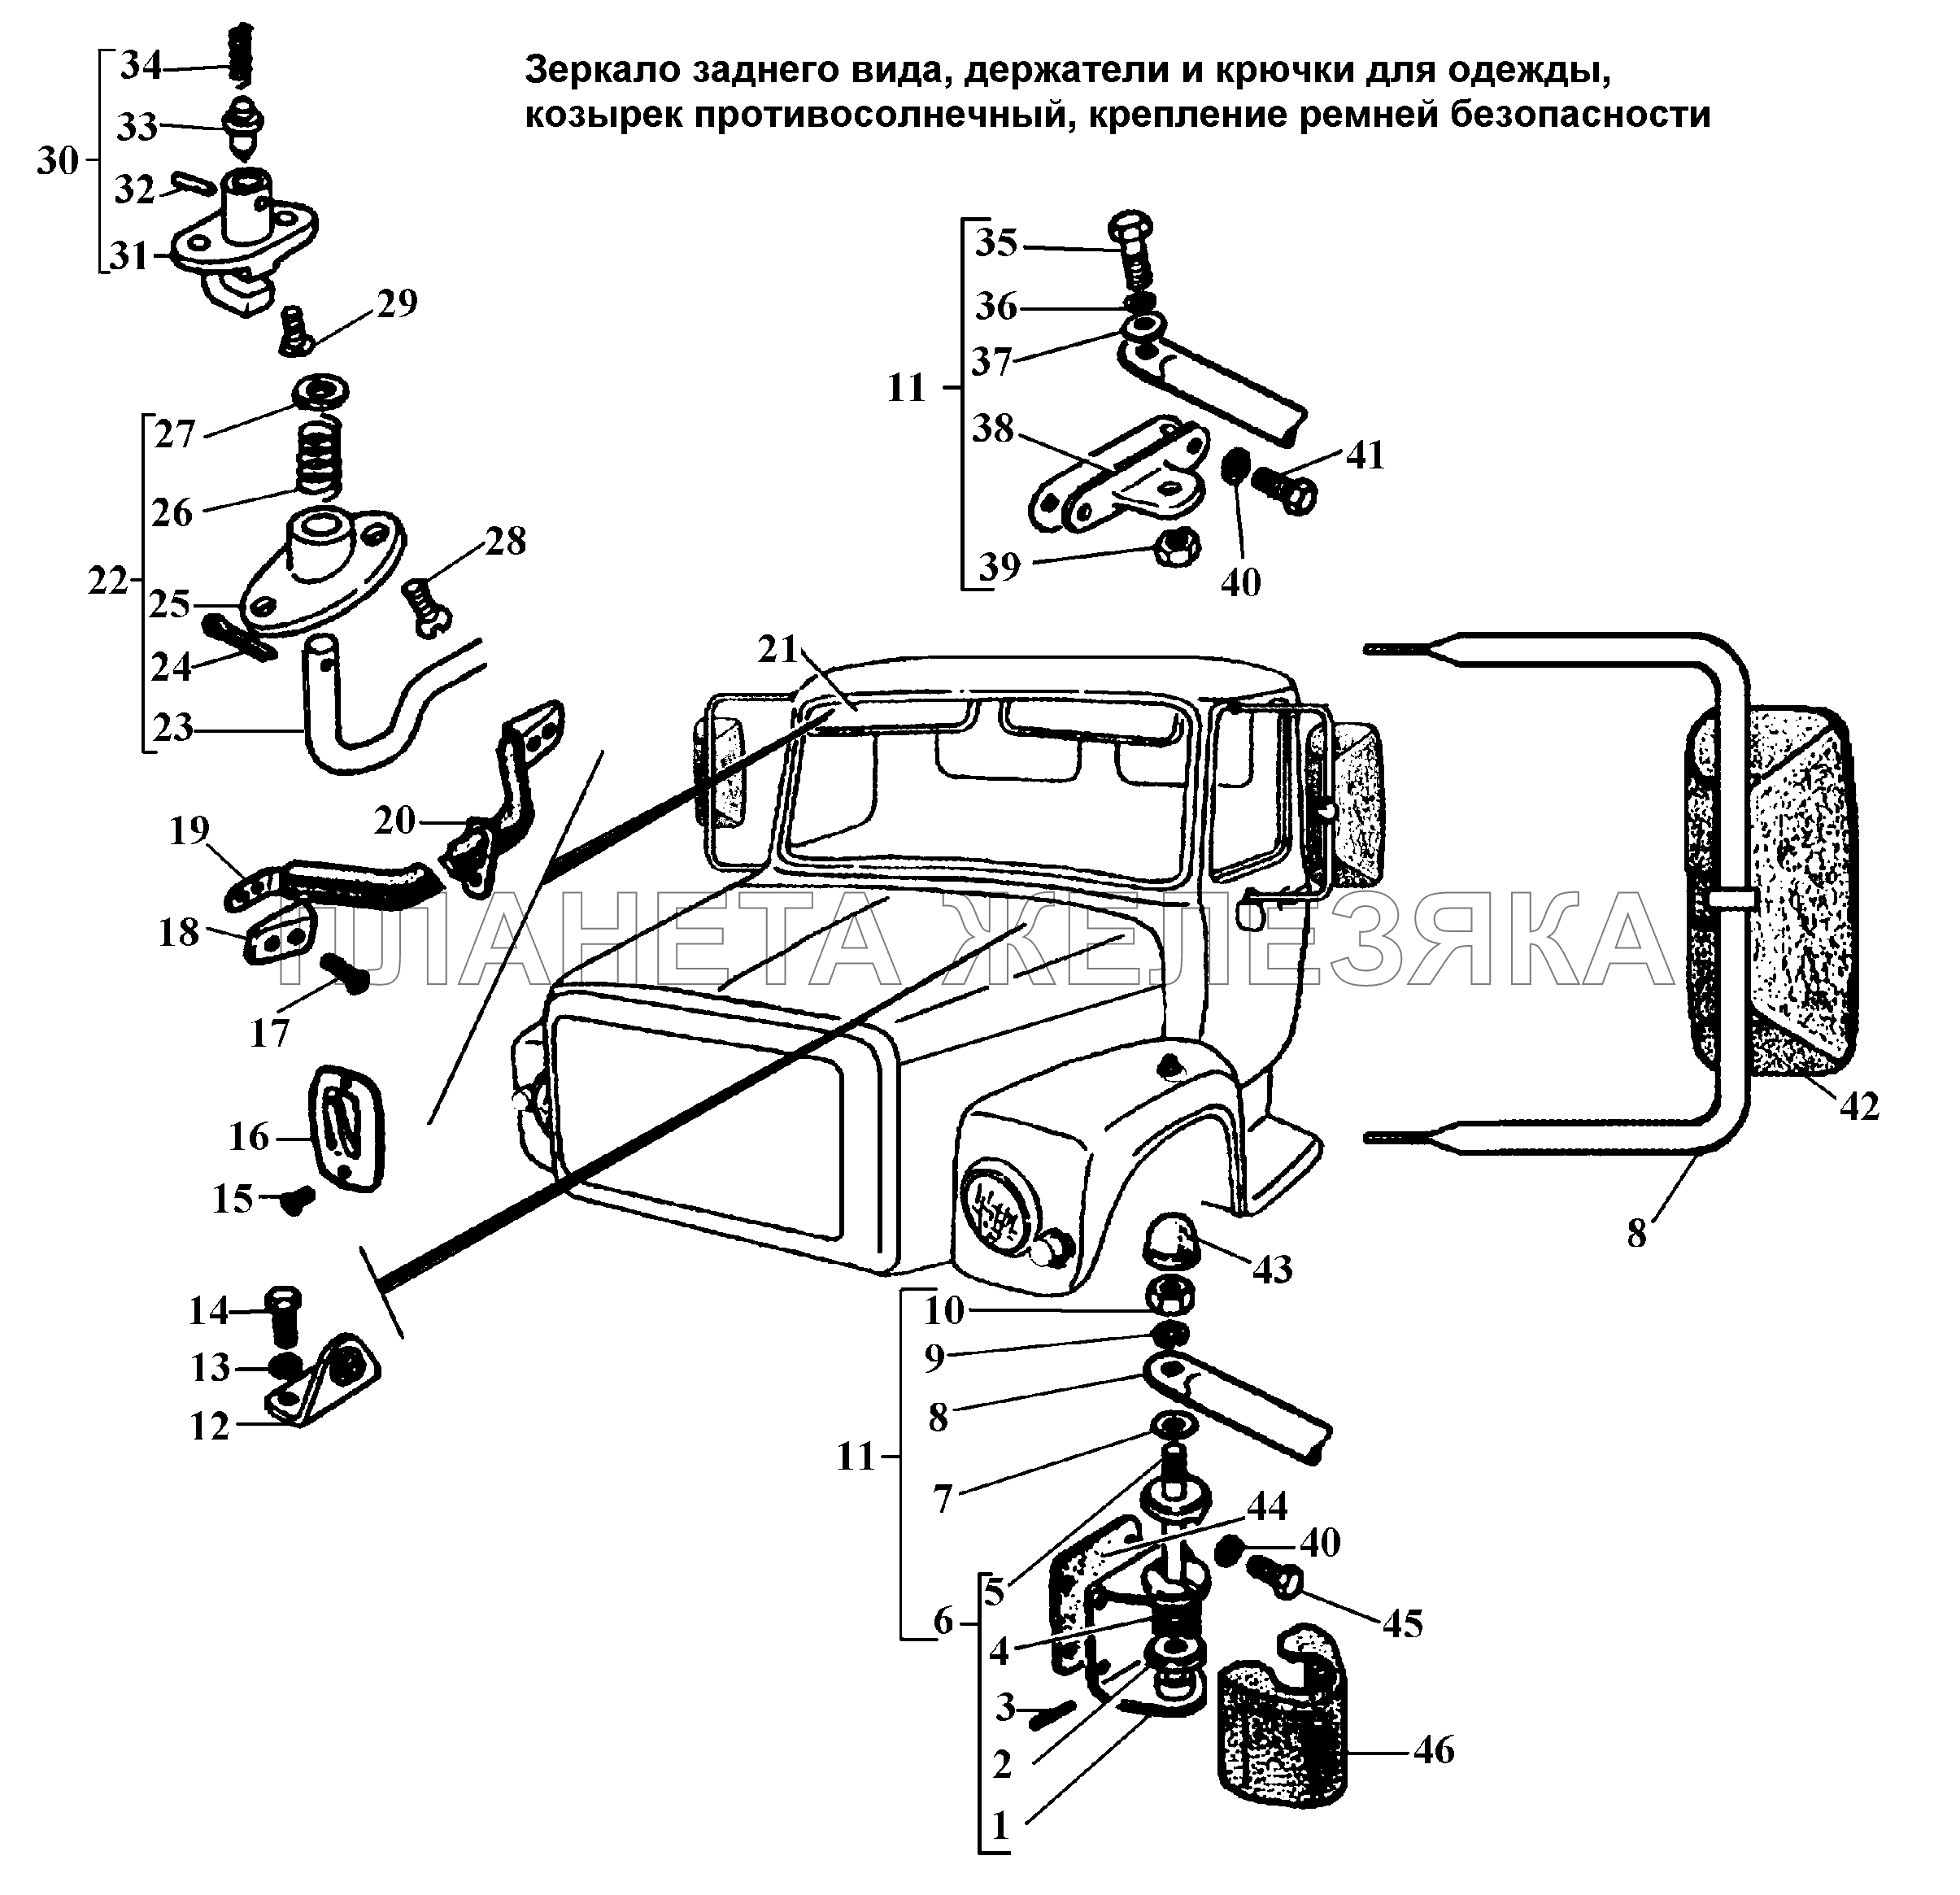 Зеркало заднего вида, козырек противосолнечный, крепление ремней безопасности ГАЗ-3308